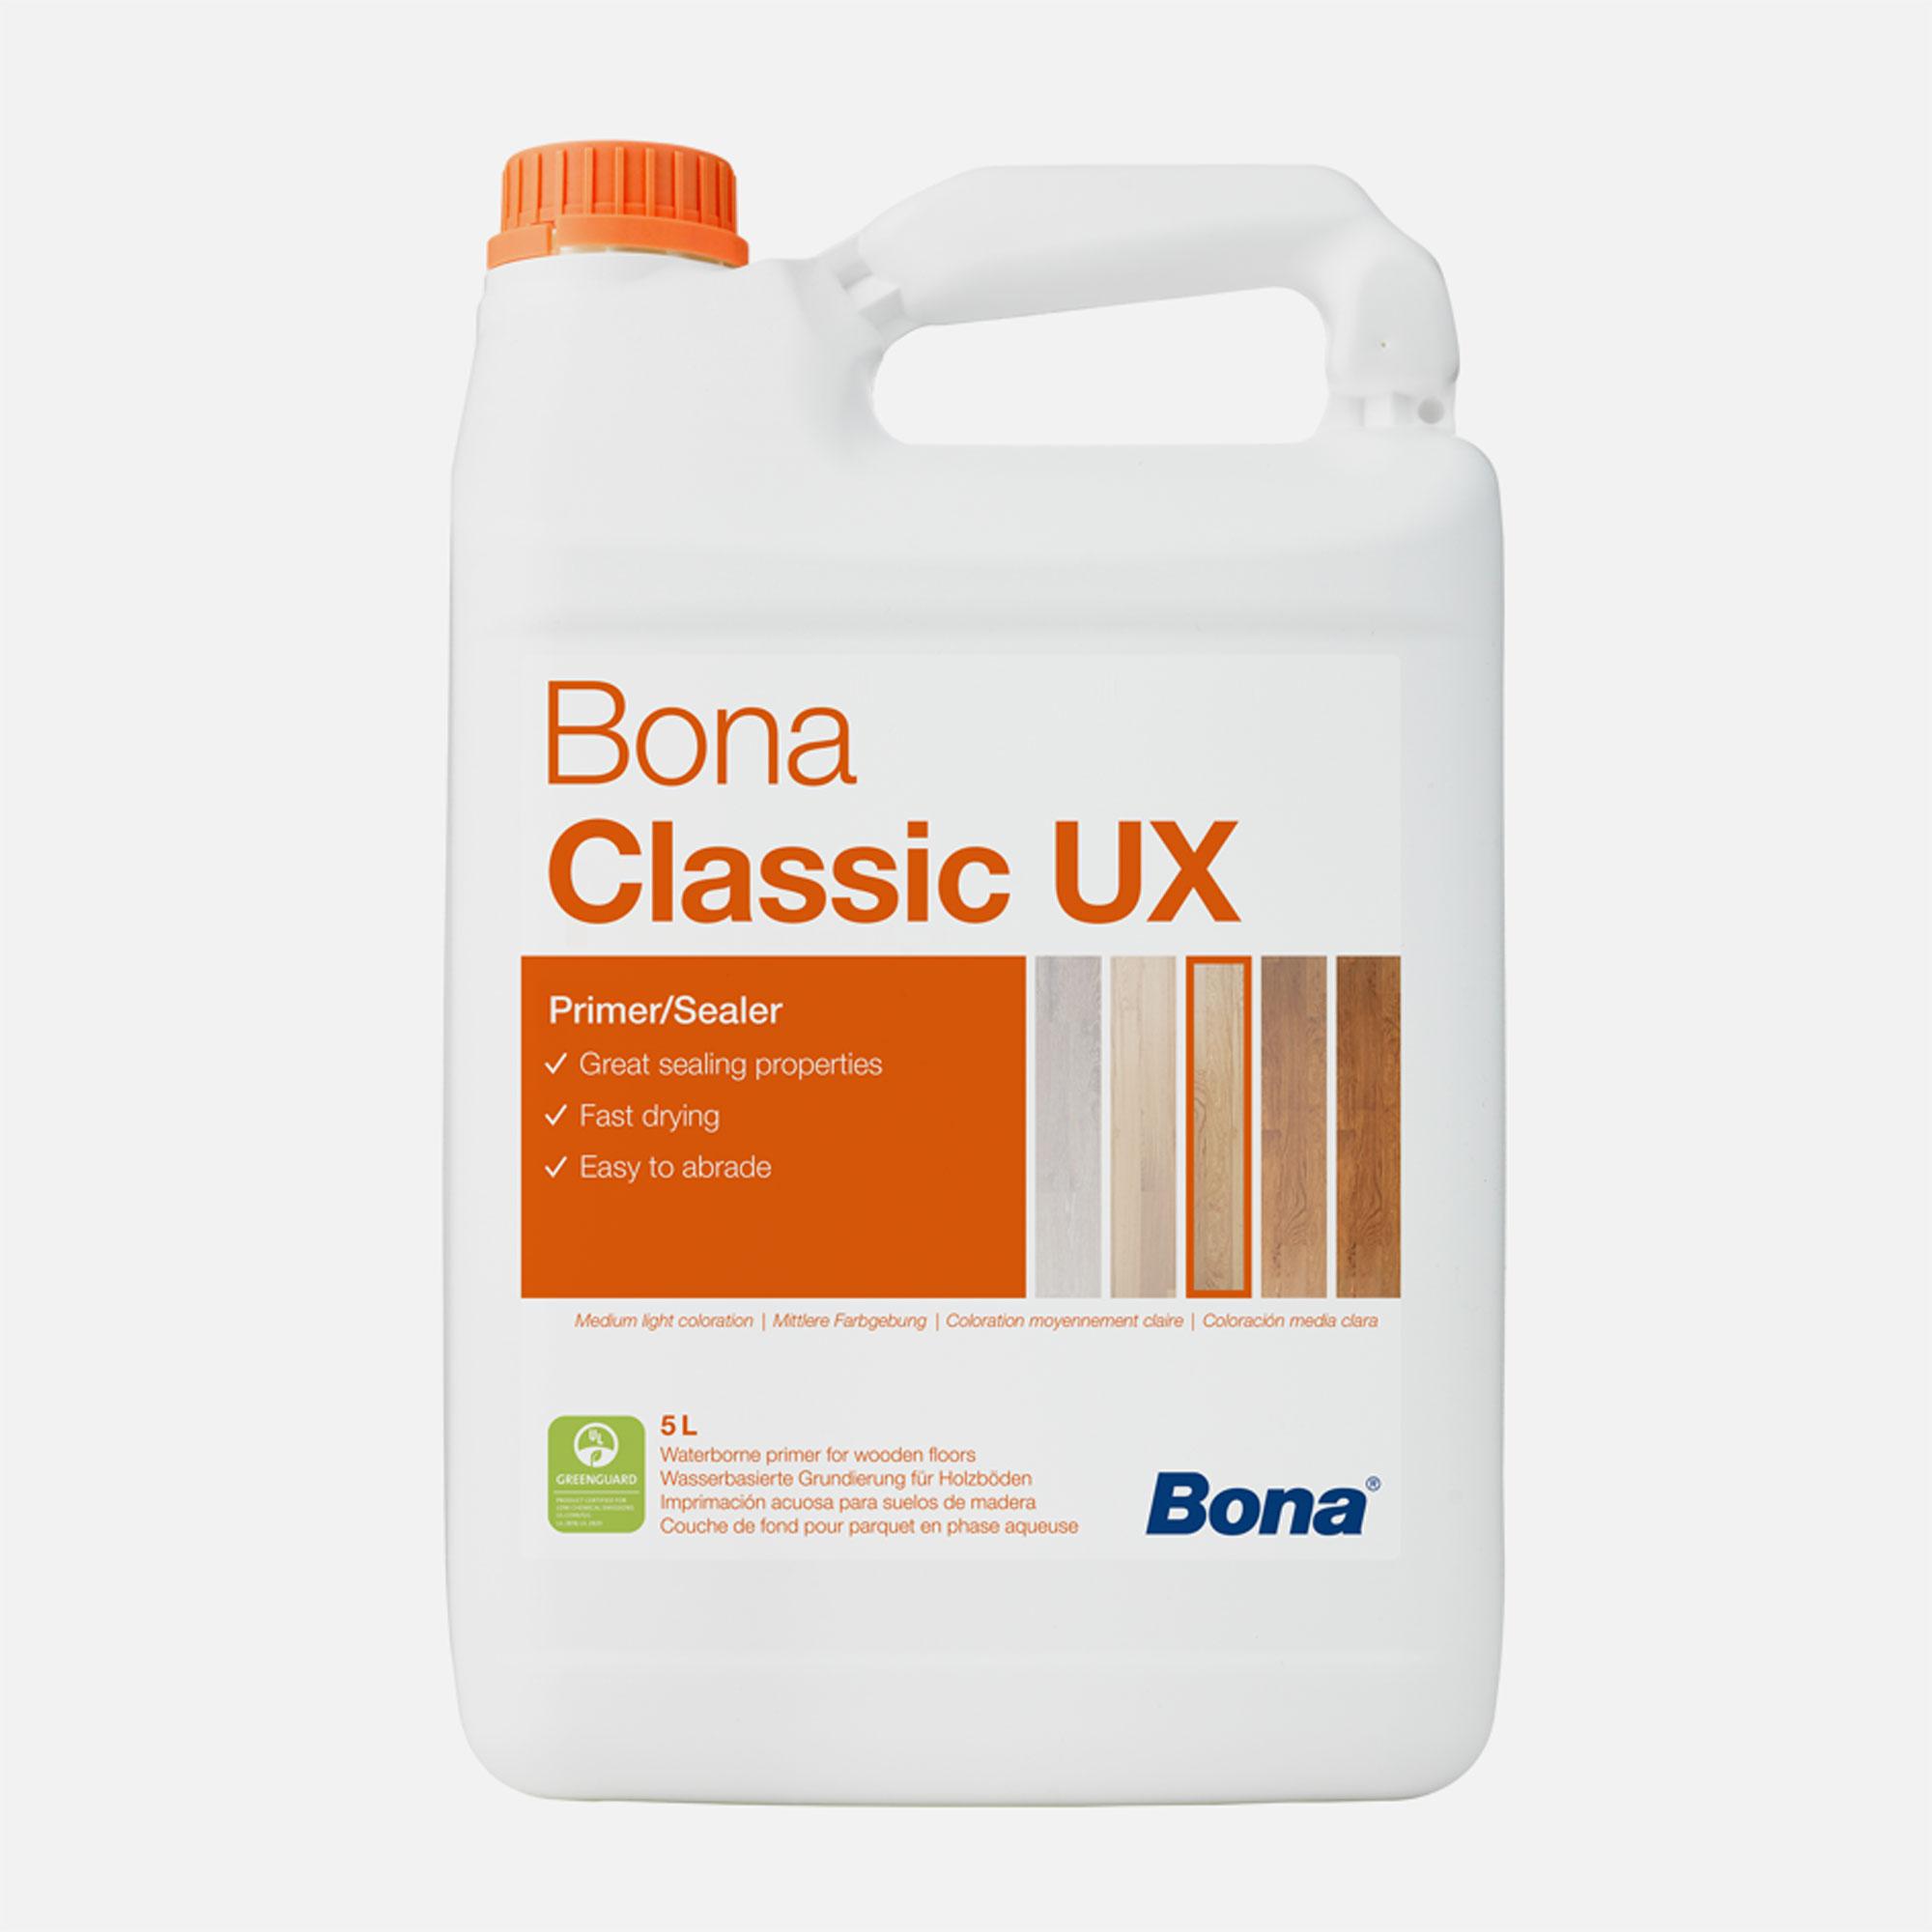 Bona Classic UX wasserbasierte Grundierung für unbehandelte Holzböden